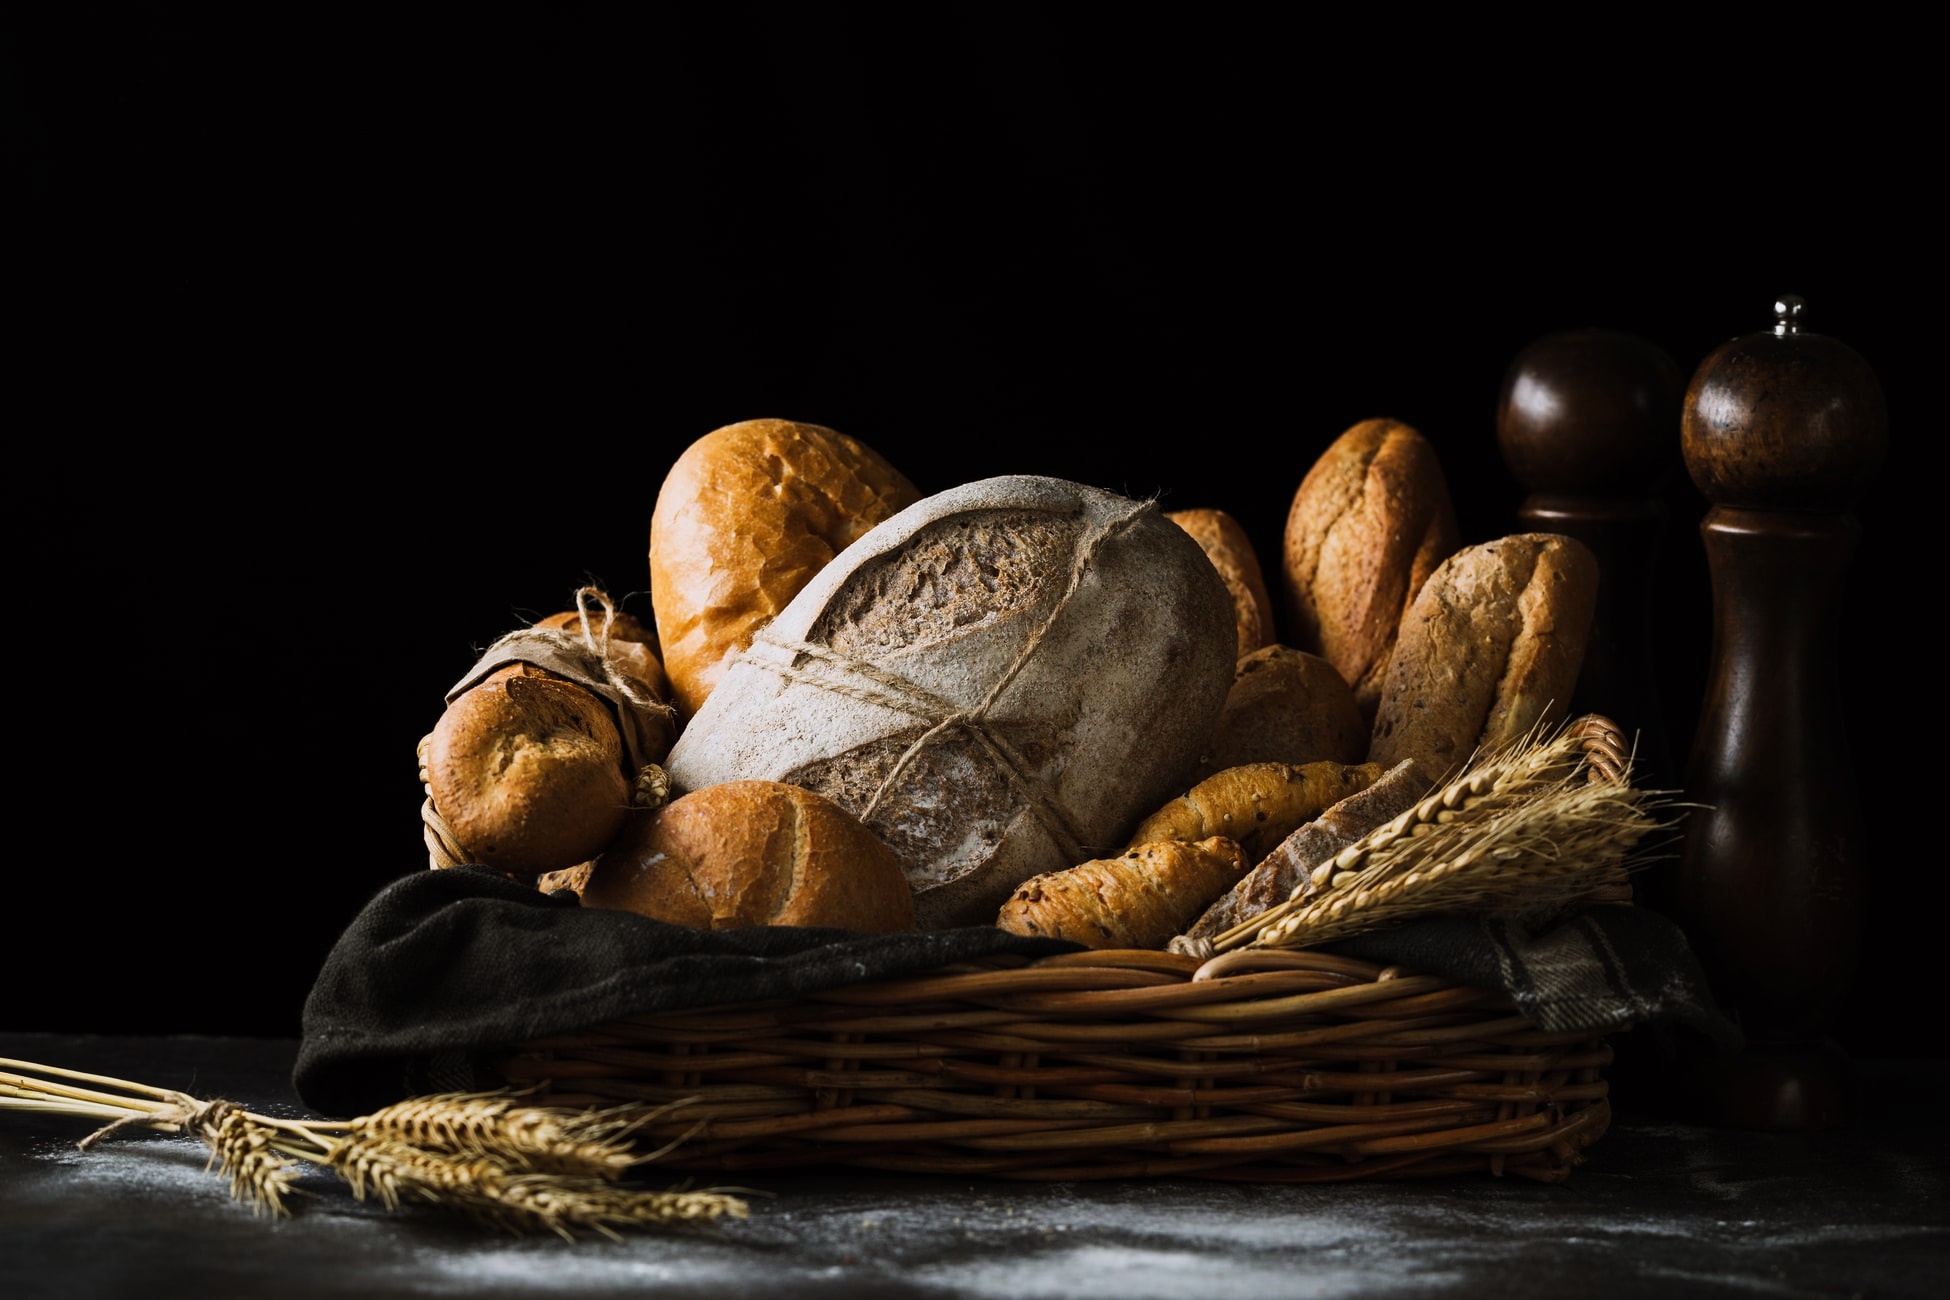 PRZEPISY: 16.10. Światowy Dzień Chleba